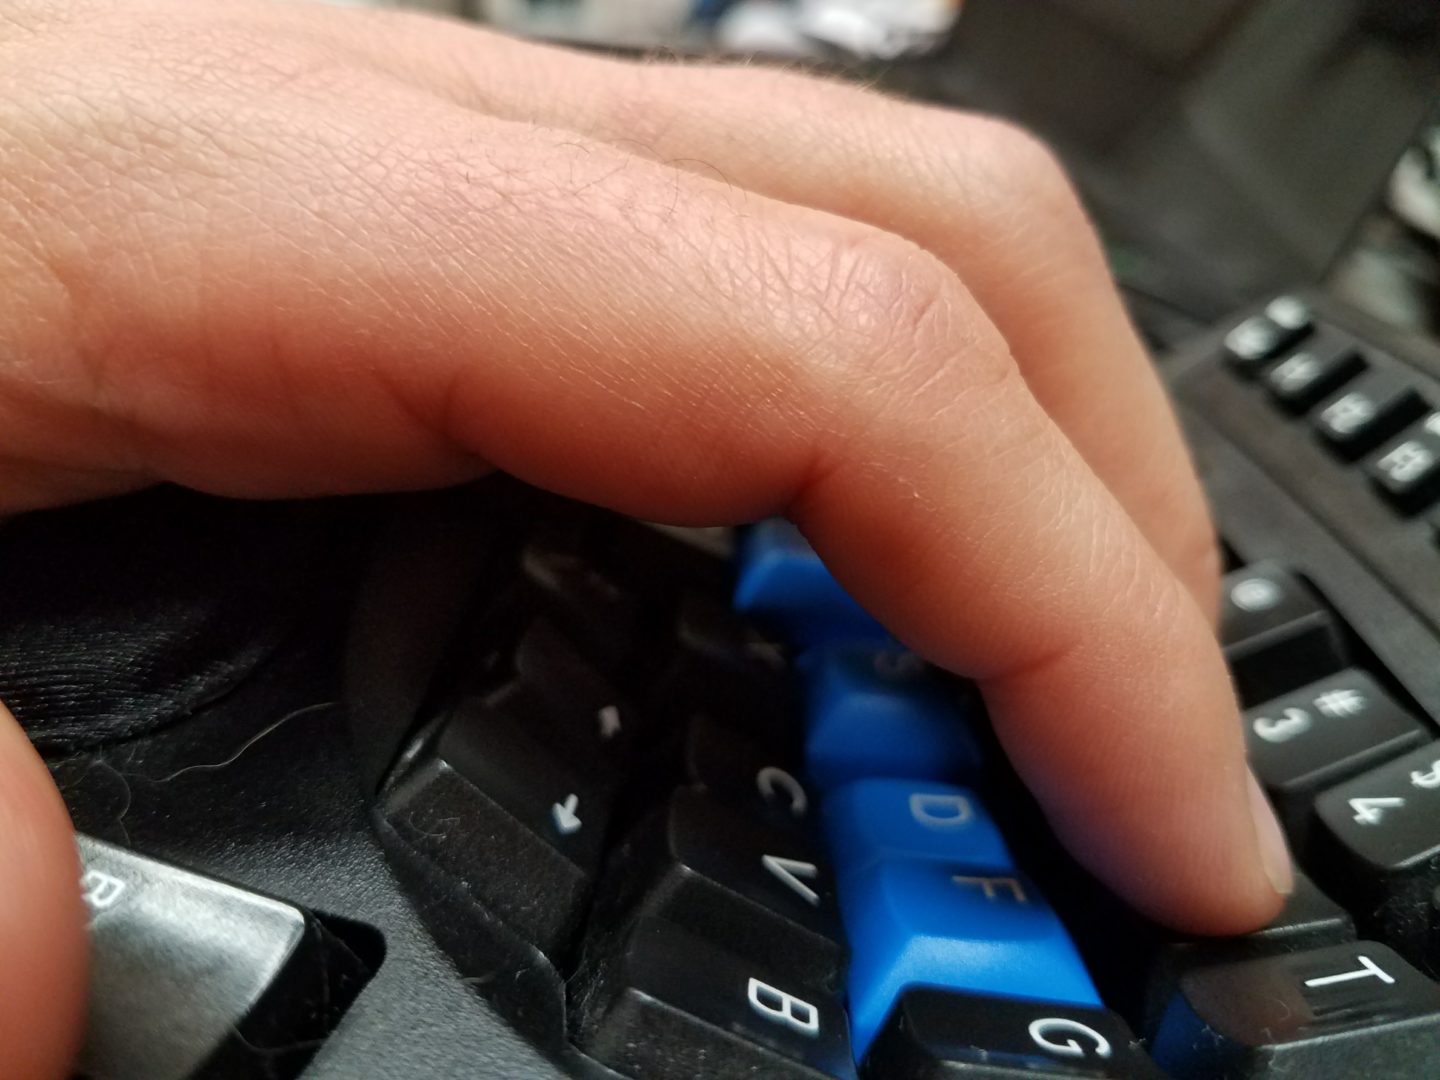 Fingers on a Kinesis keyboard